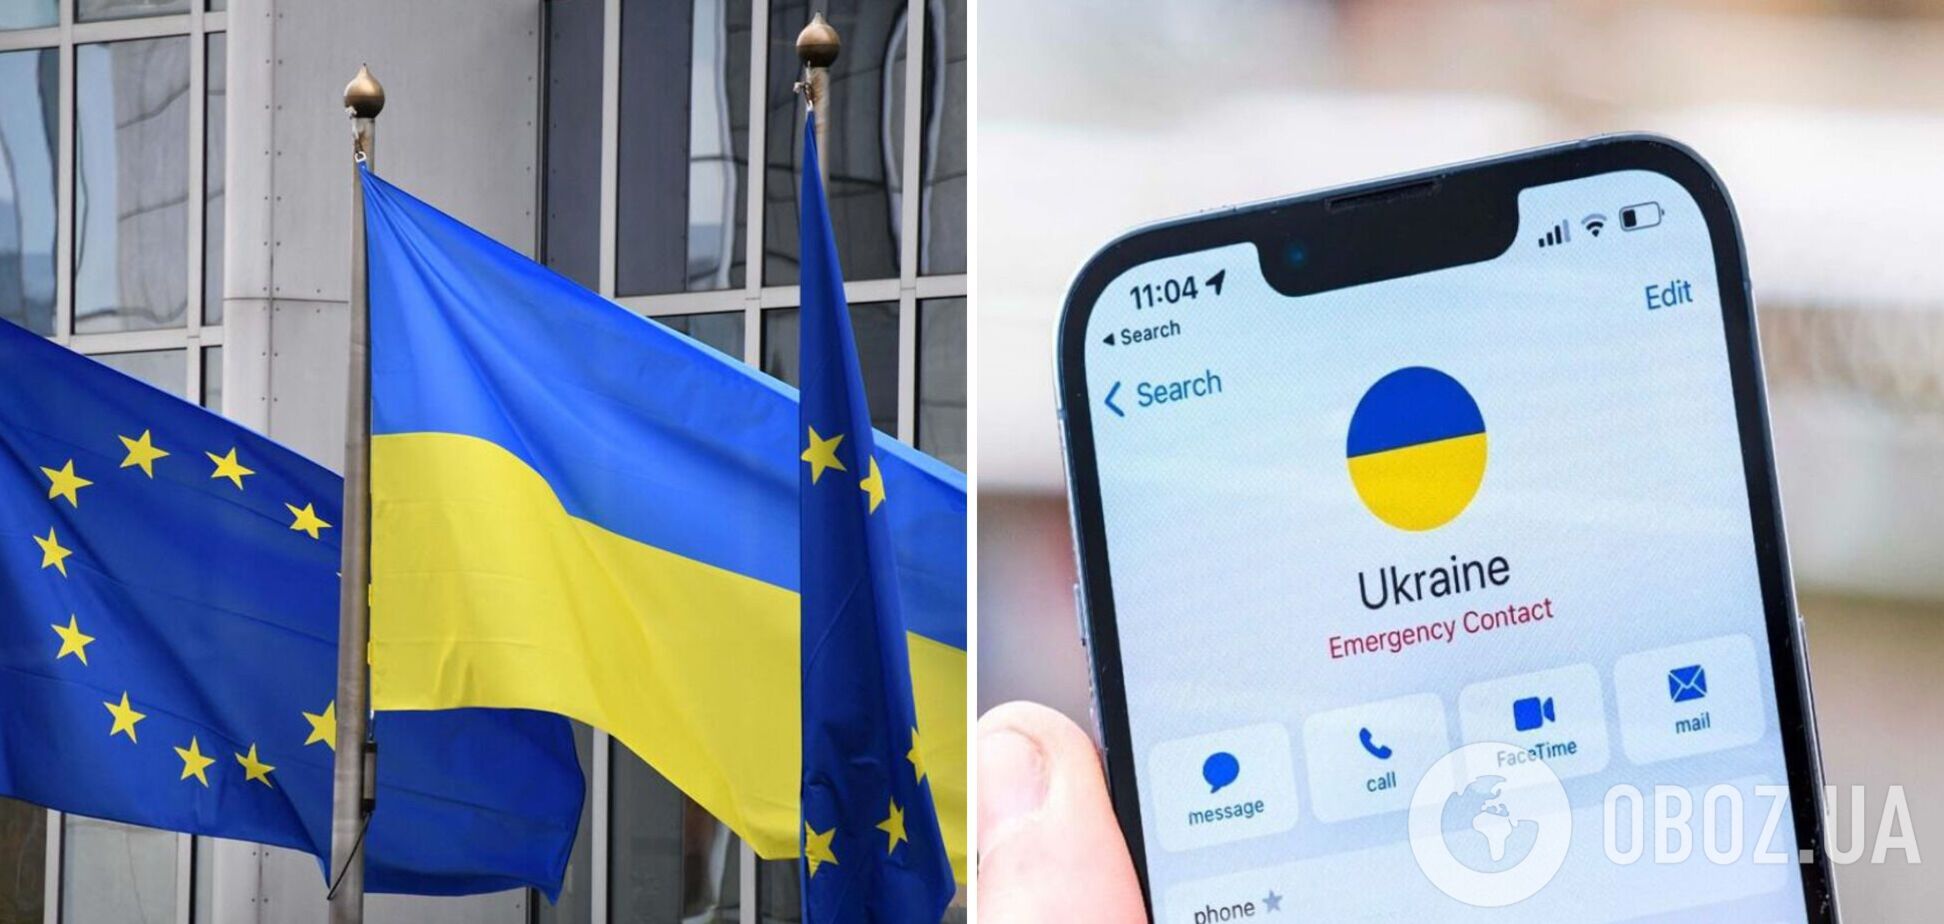 Єврокомісія офіційно запропонувала розширити зону роумінгу ЄС і приєднати Україну  